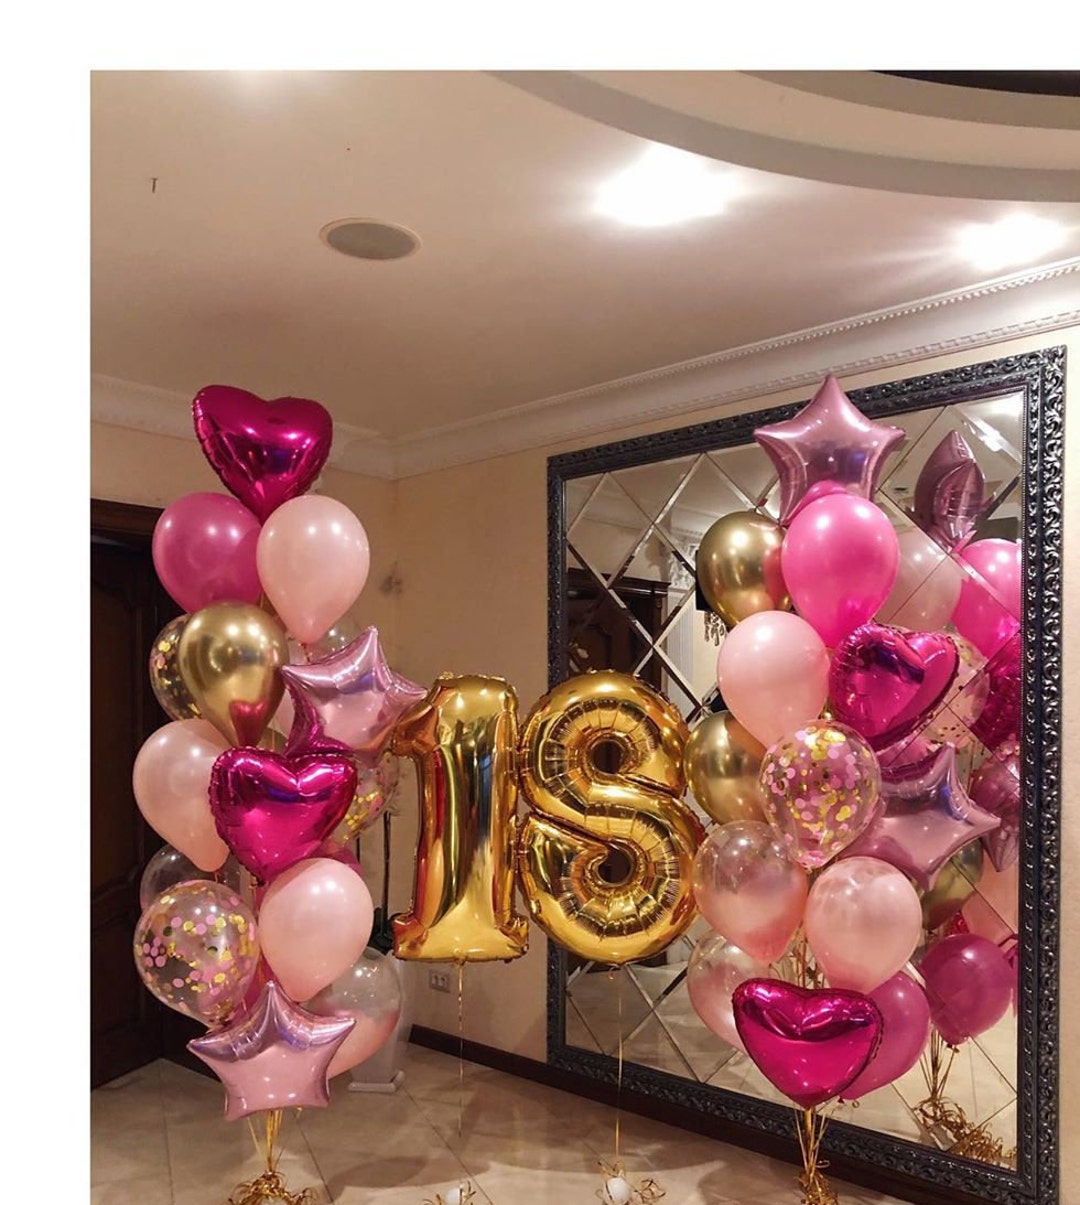 Magica Fiesta Addobbi Palloncini Balloon Art - Personalizza i tuoi 18 anni  con un ADDOBBO PAZZESCO!!! Clicca sul link per tutti i pacchetti    Chiama allo 0815200831 e prenota